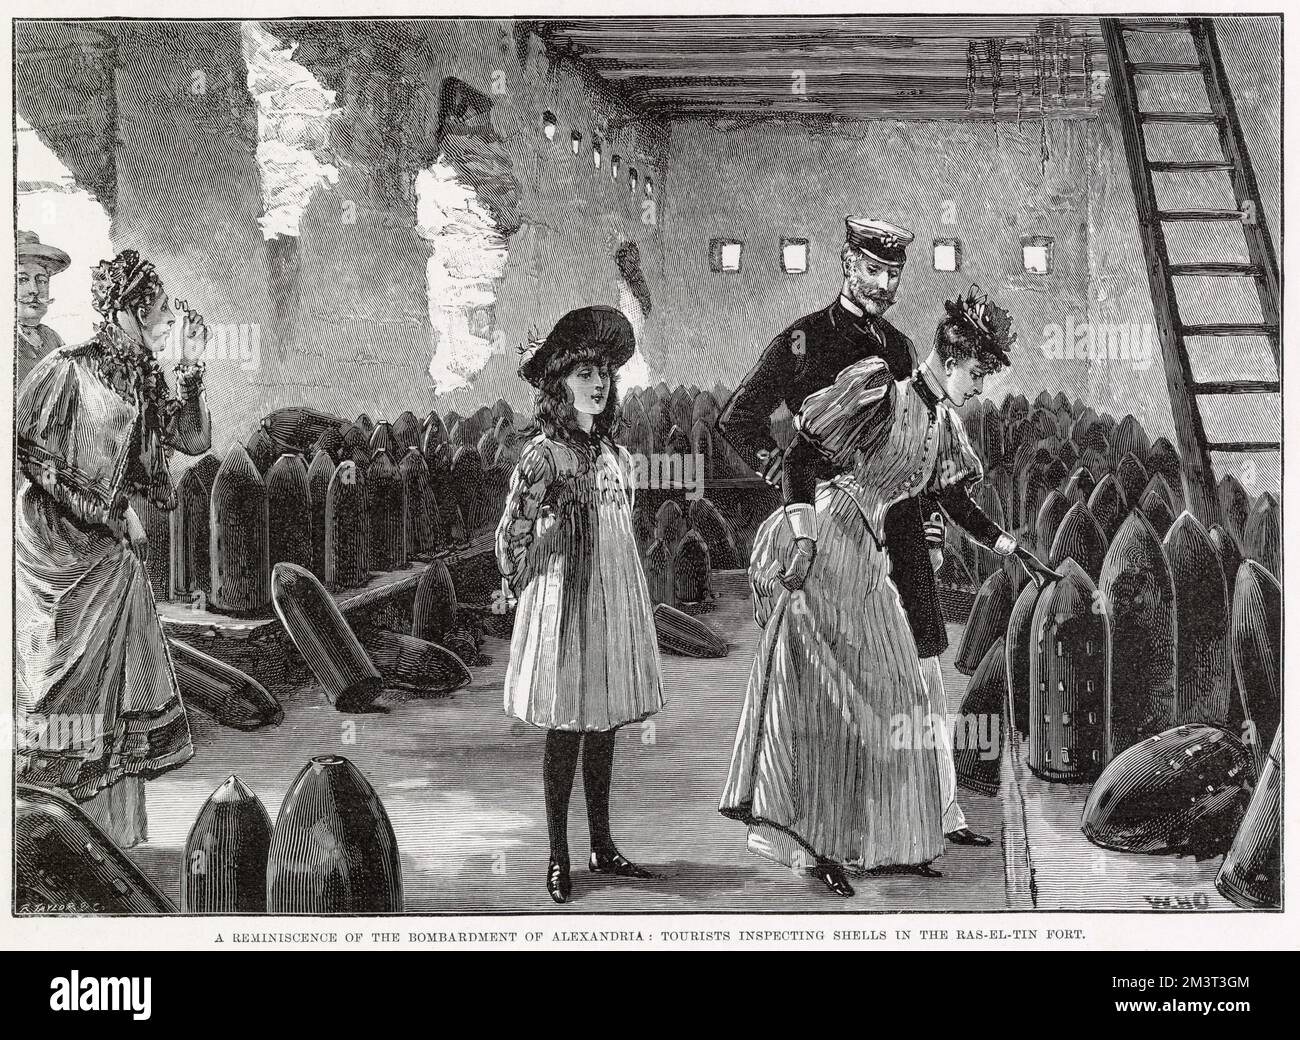 Un souvenir du bombardement d'Alexandrie, des touristes inspectant des obus dans le fort de Ras-El-Tin Date: 1896 Banque D'Images